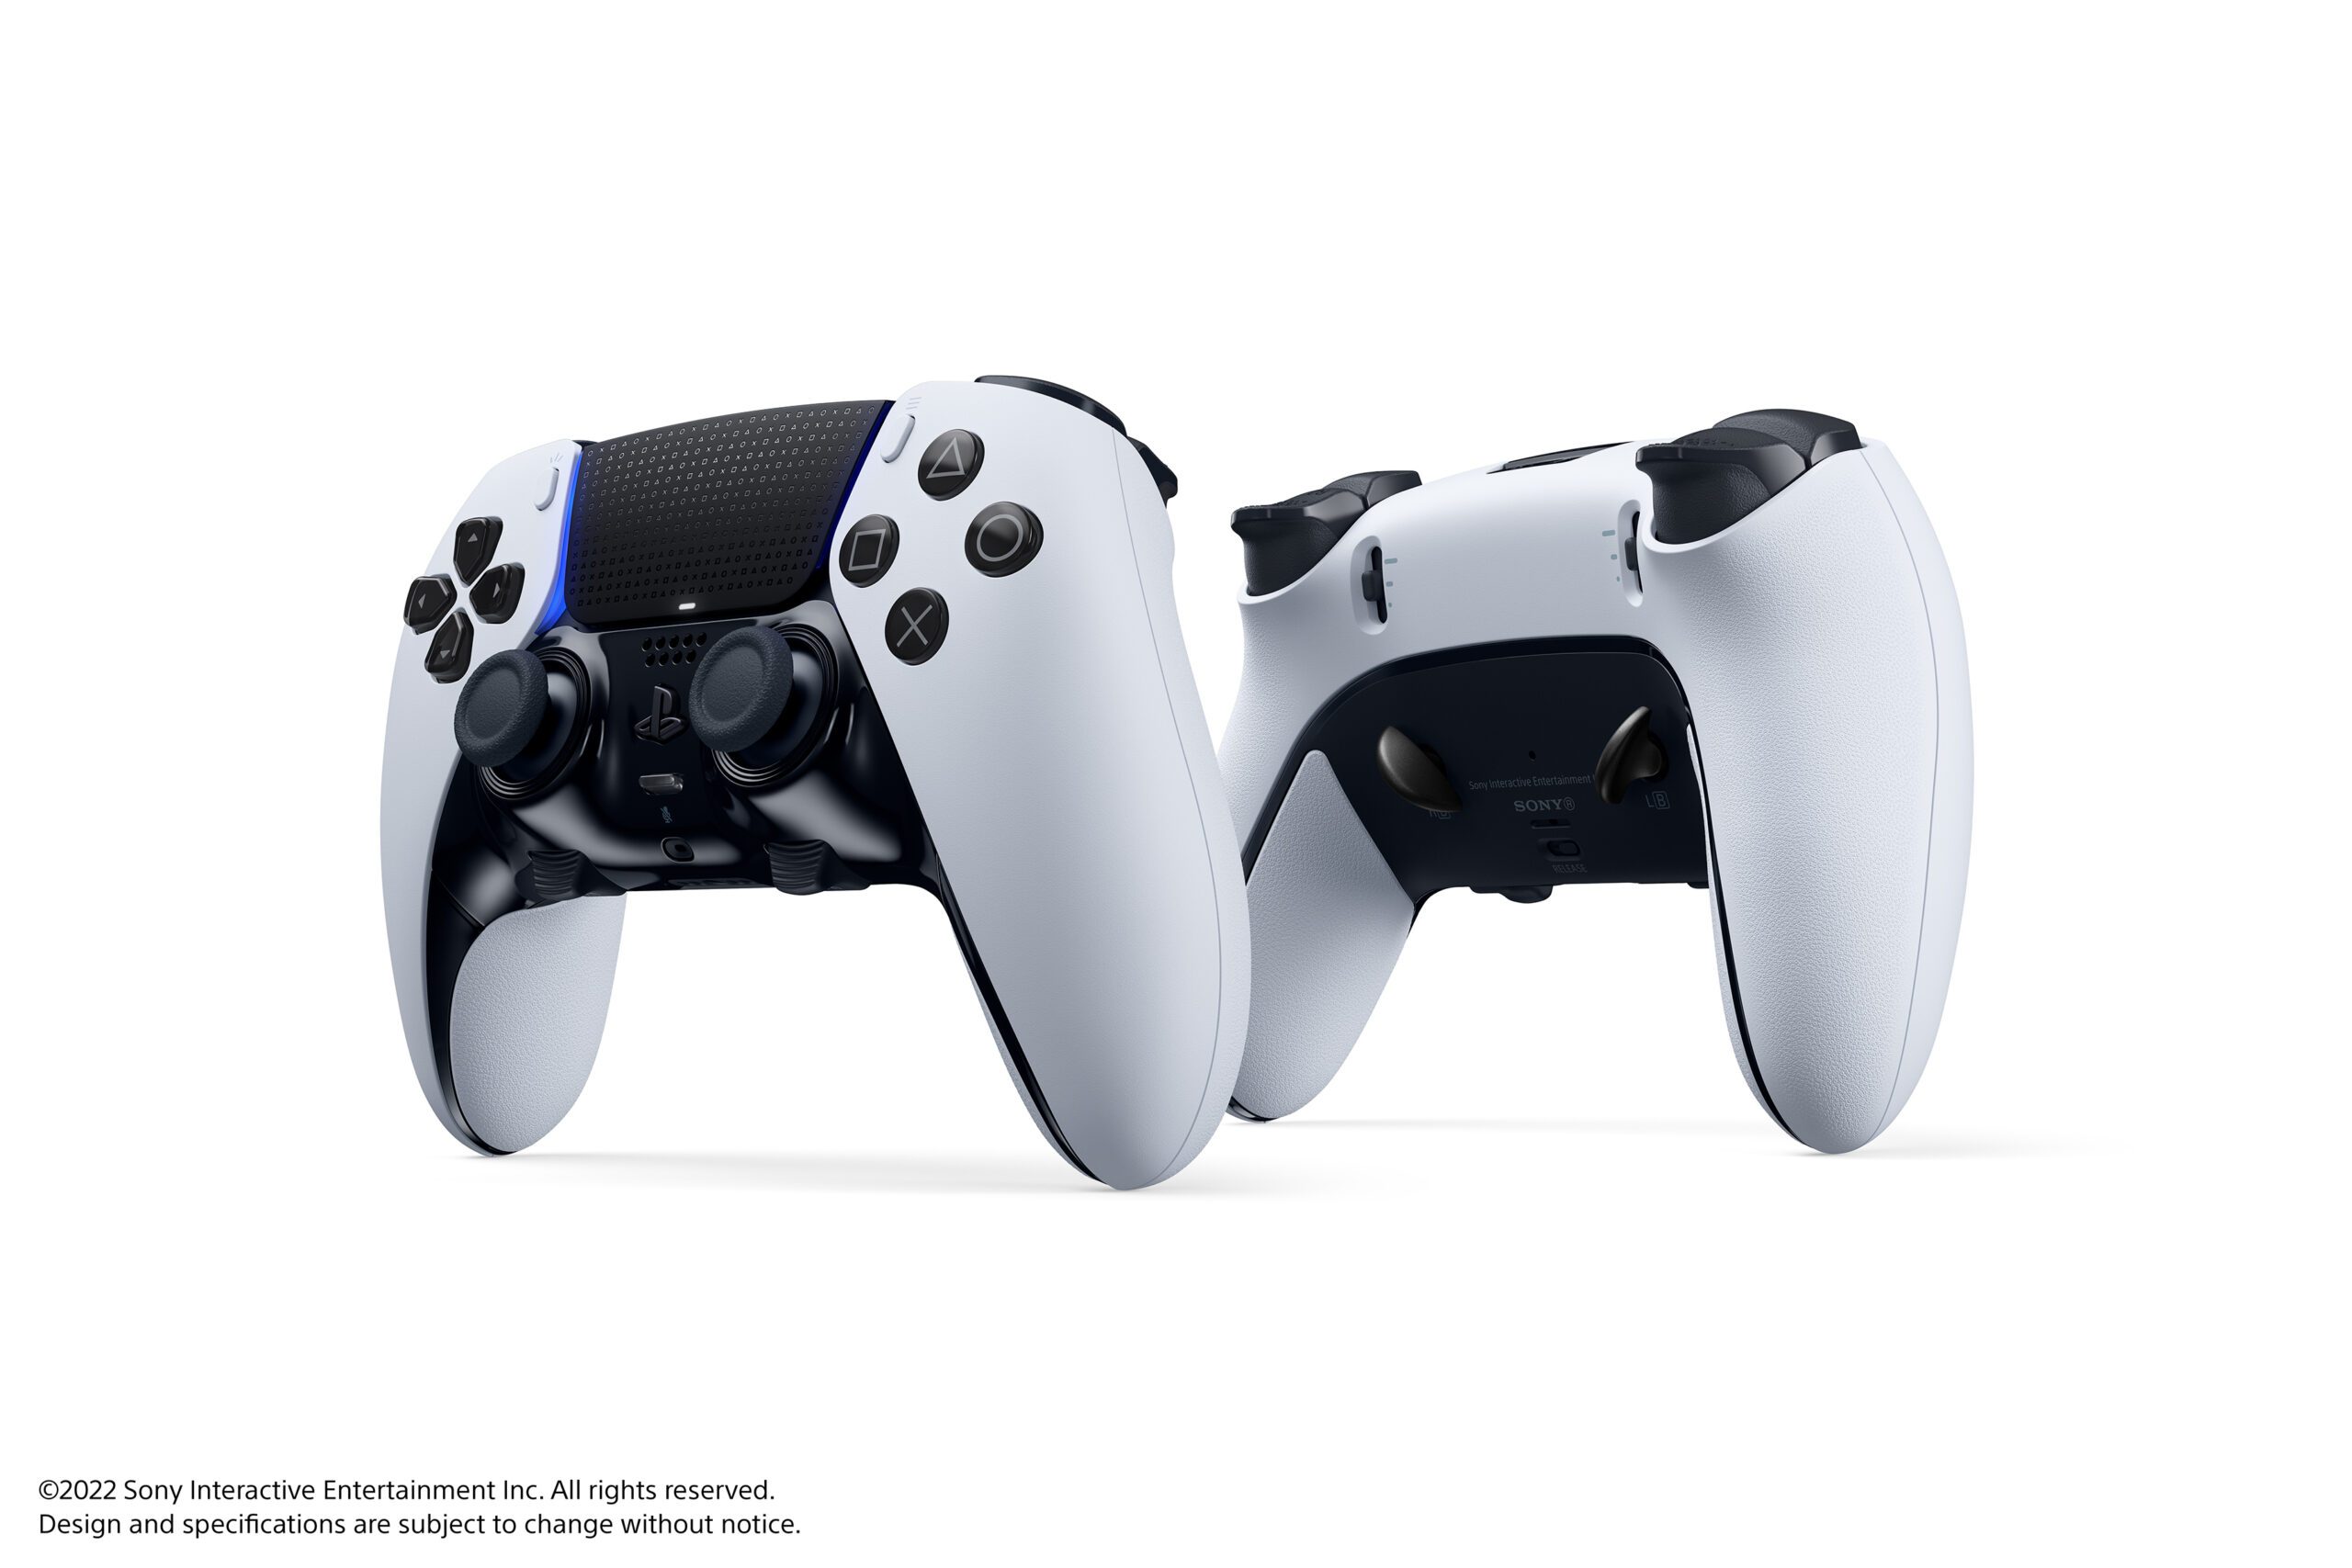 Prueba del control DualSense Edge: conclusiones clave – PlayStation.Blog  LATAM